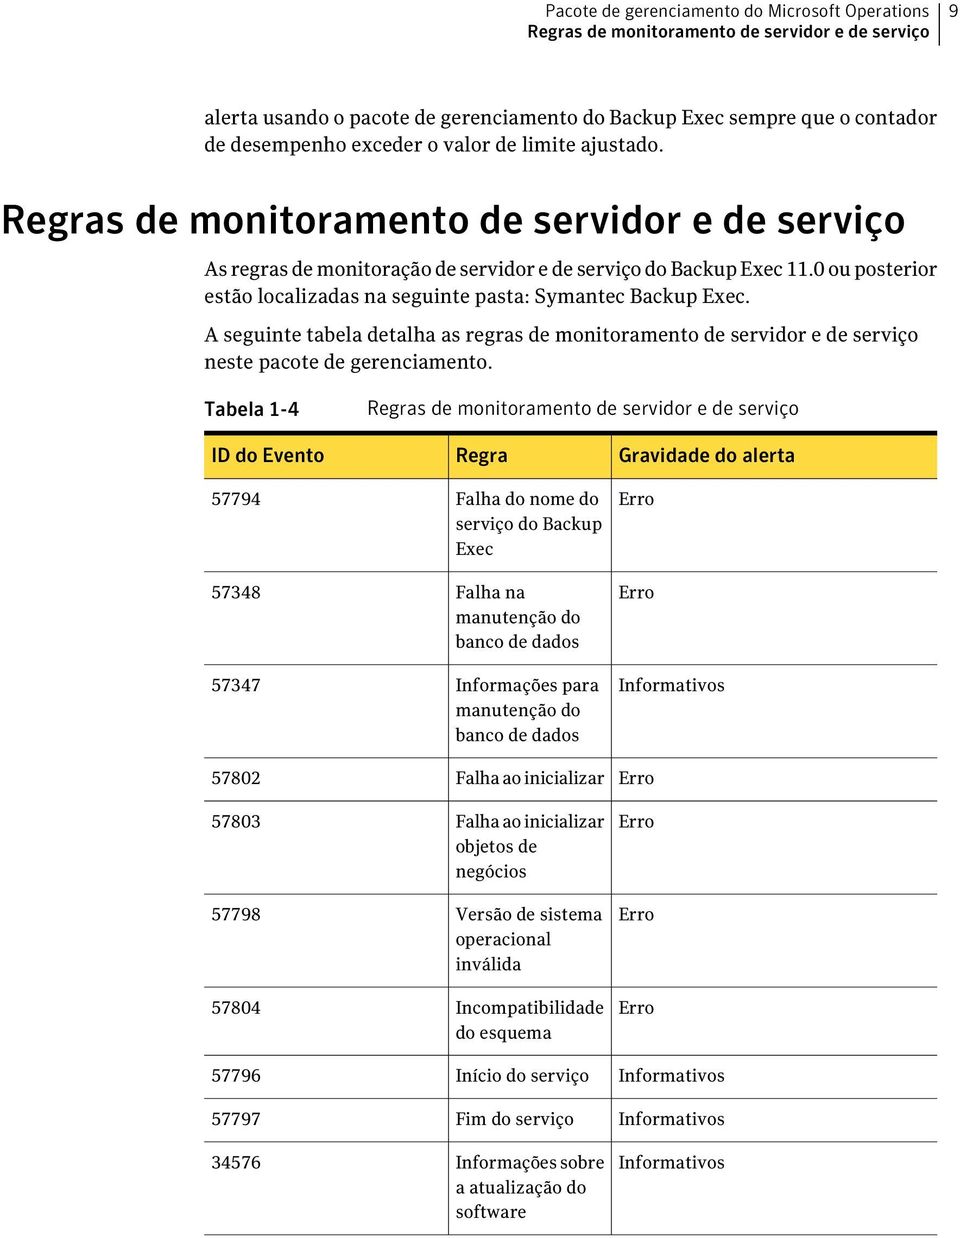 0 ou posterior estão localizadas na seguinte pasta: Symantec Backup Exec. A seguinte tabela detalha as regras de monitoramento de servidor e de serviço neste pacote de gerenciamento.